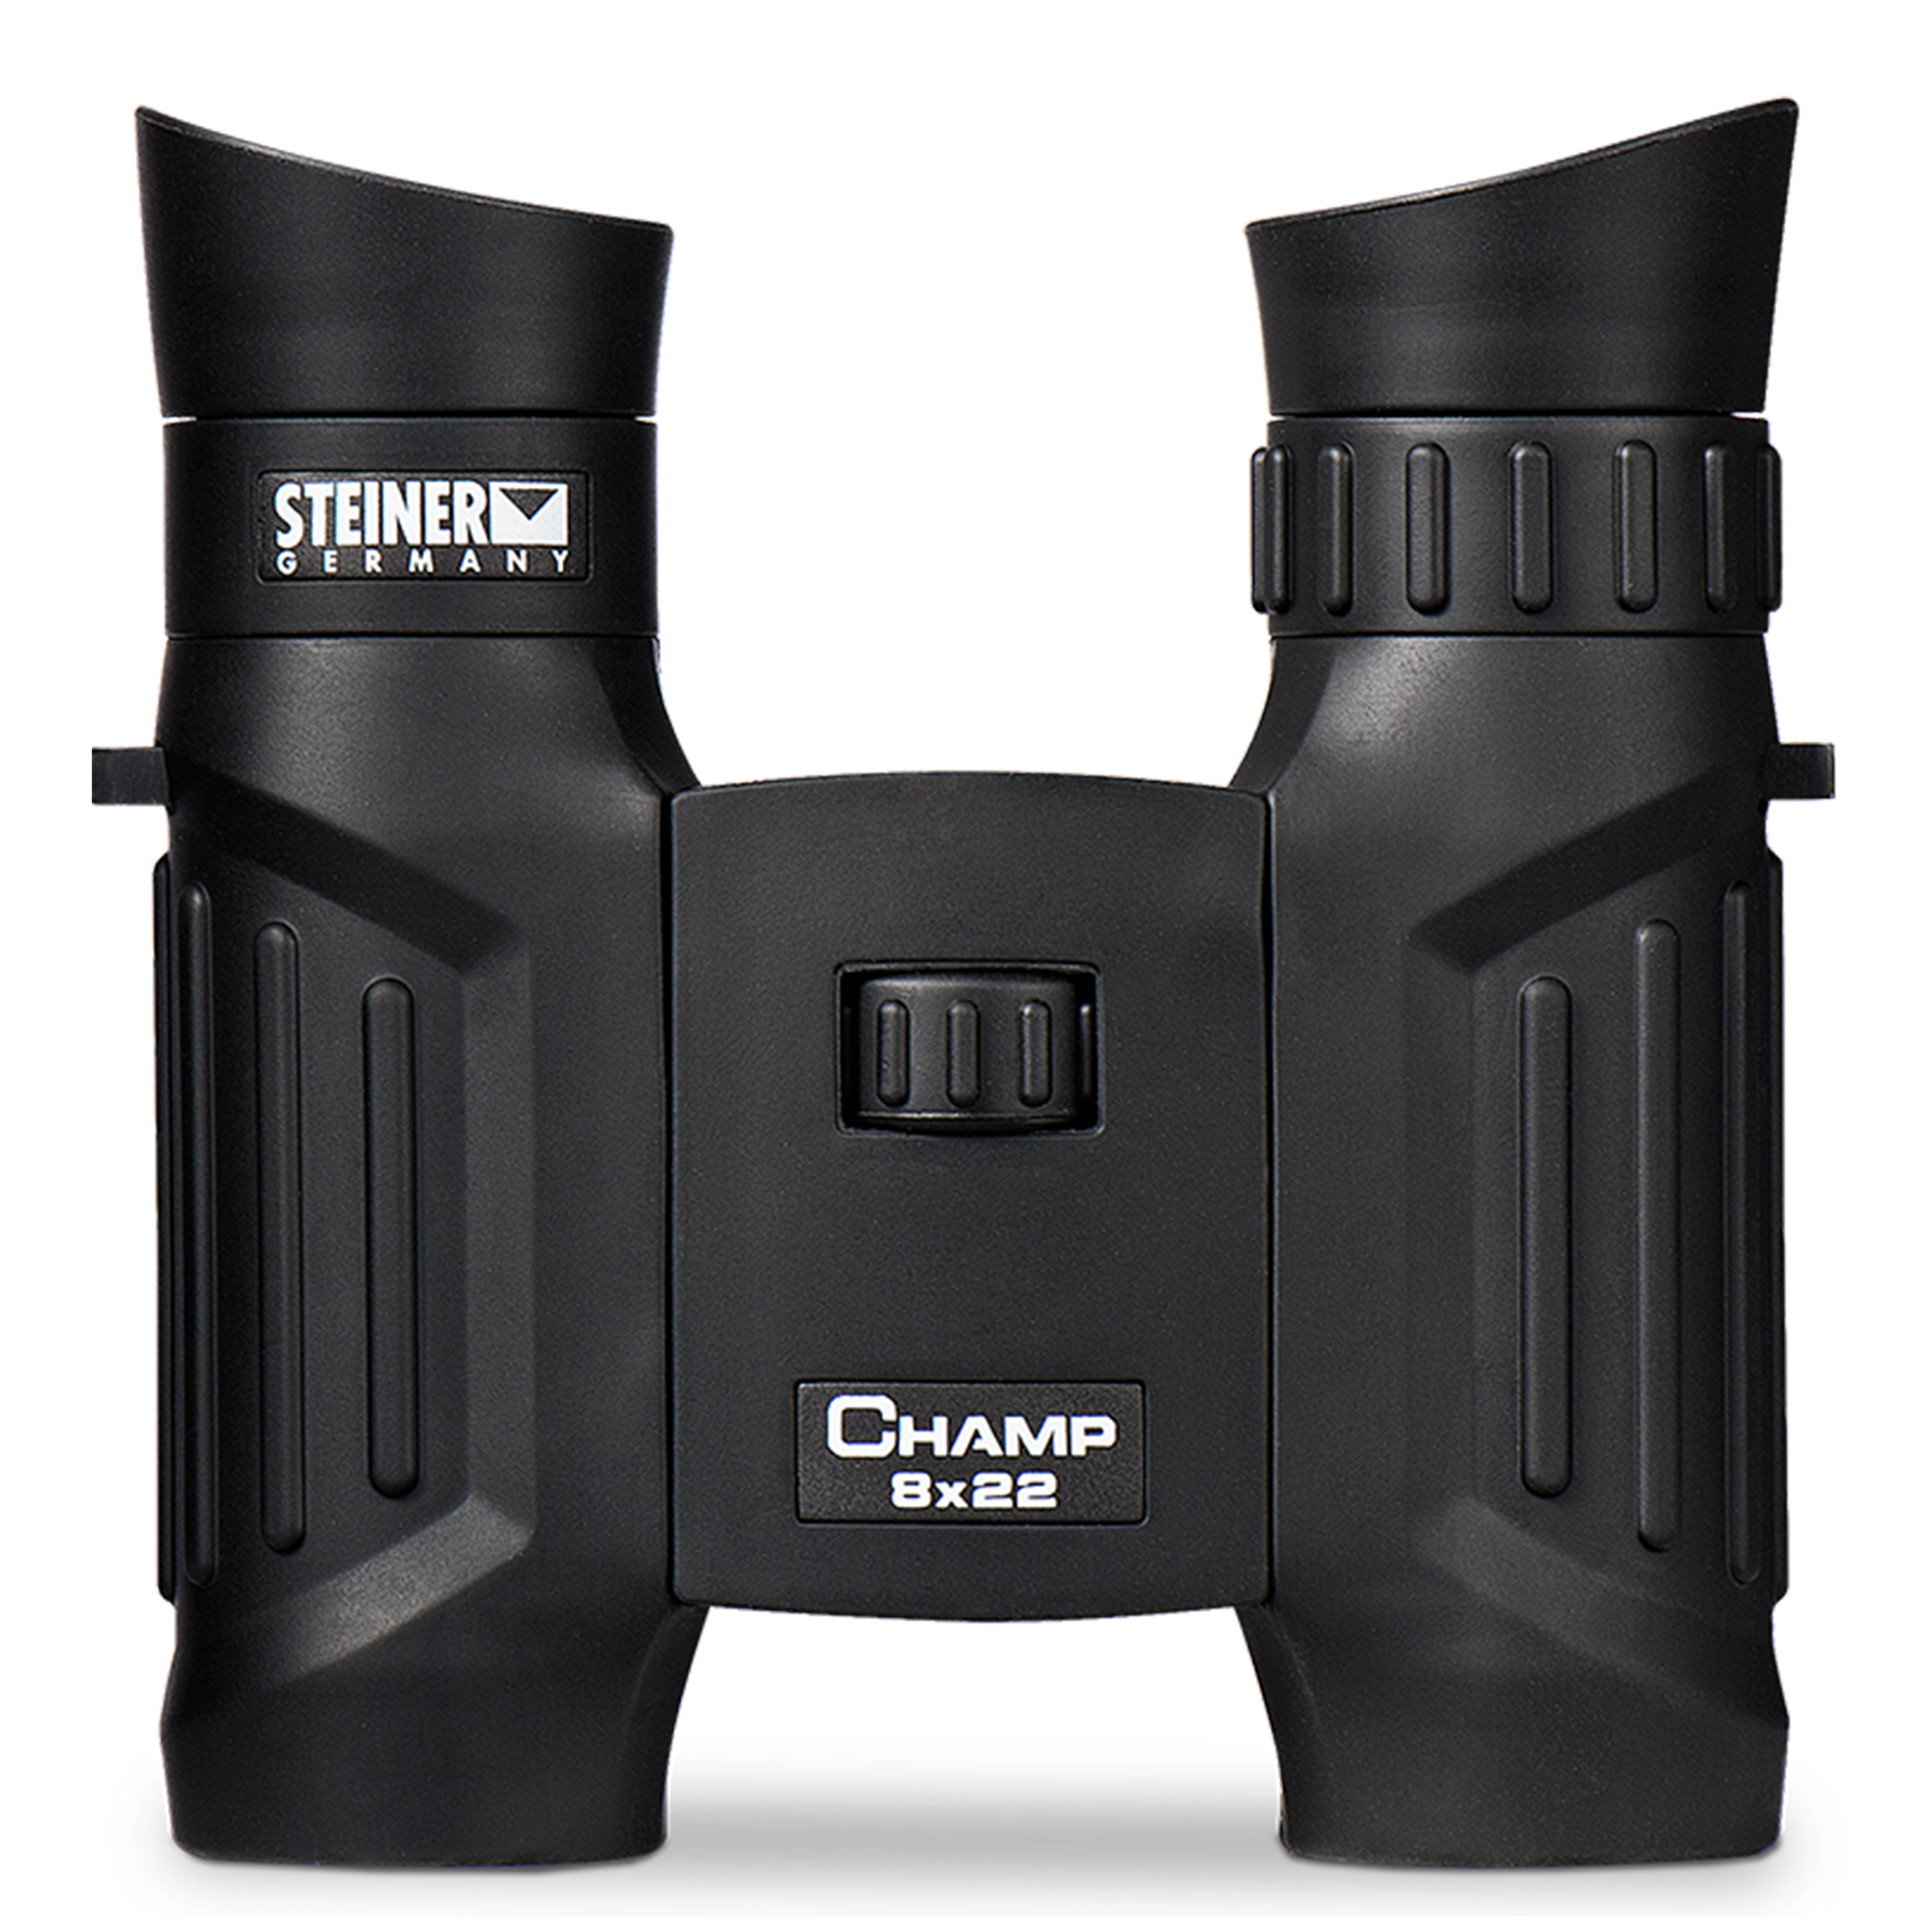 Steiner Champ 8x22 Compact Binocular